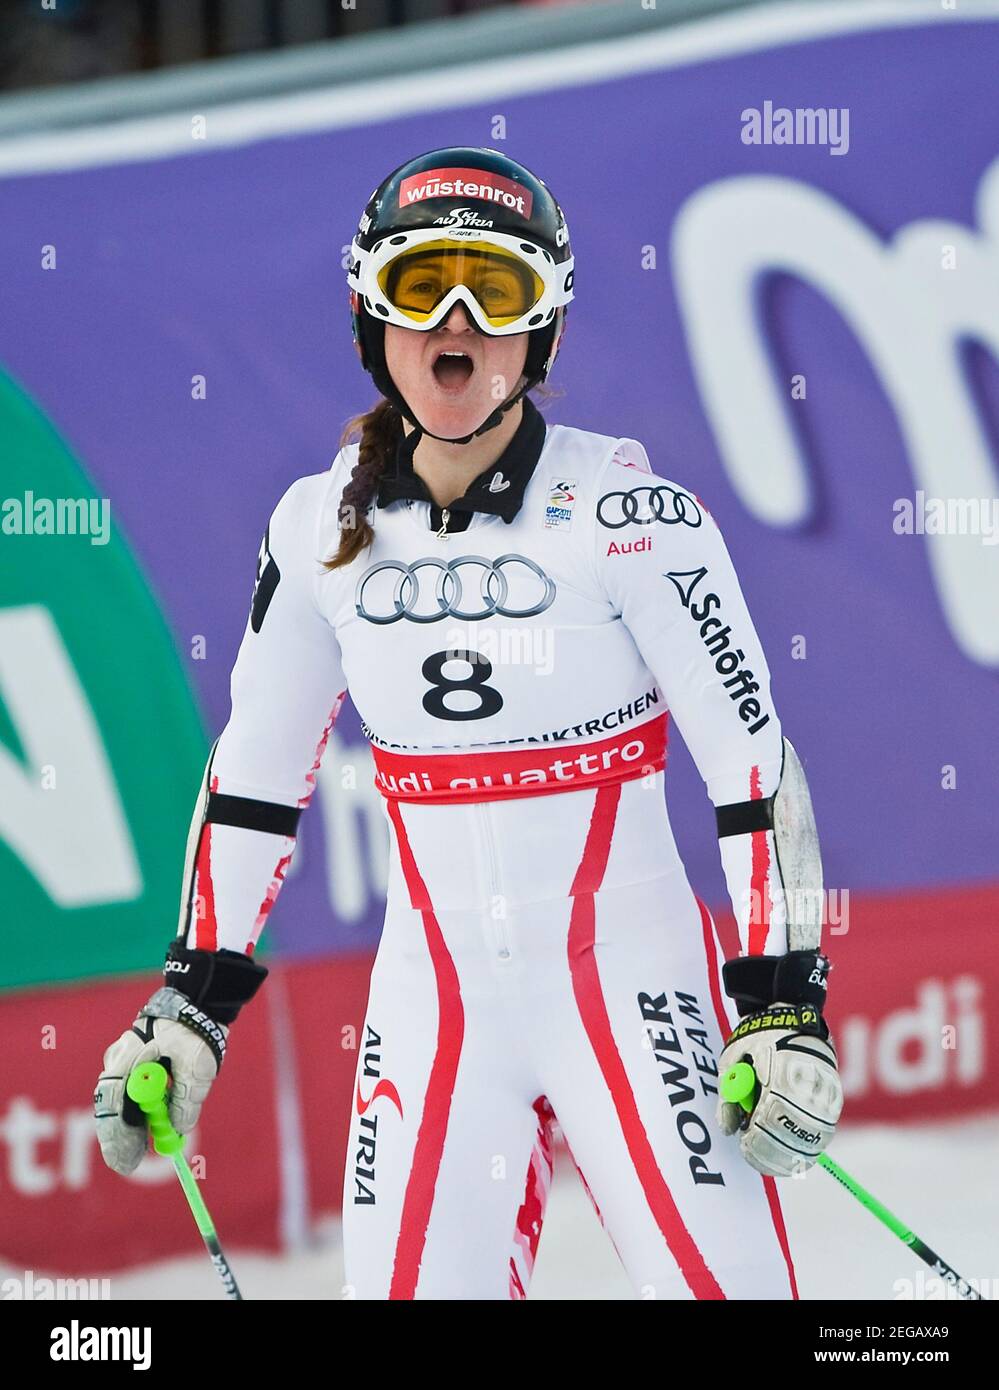 Elisabeth GOERGL avrà 40 anni il 20 febbraio 2021, Elisabeth GOERGL, AUT, mezza cifra, Slalom gigante femminile il 17 febbraio 2011 FIS Alpine Ski World Championships 2011 a Garmisch-Partenkirchen dal 7 febbraio. - 02/20/2011 Â | utilizzo in tutto il mondo Foto Stock